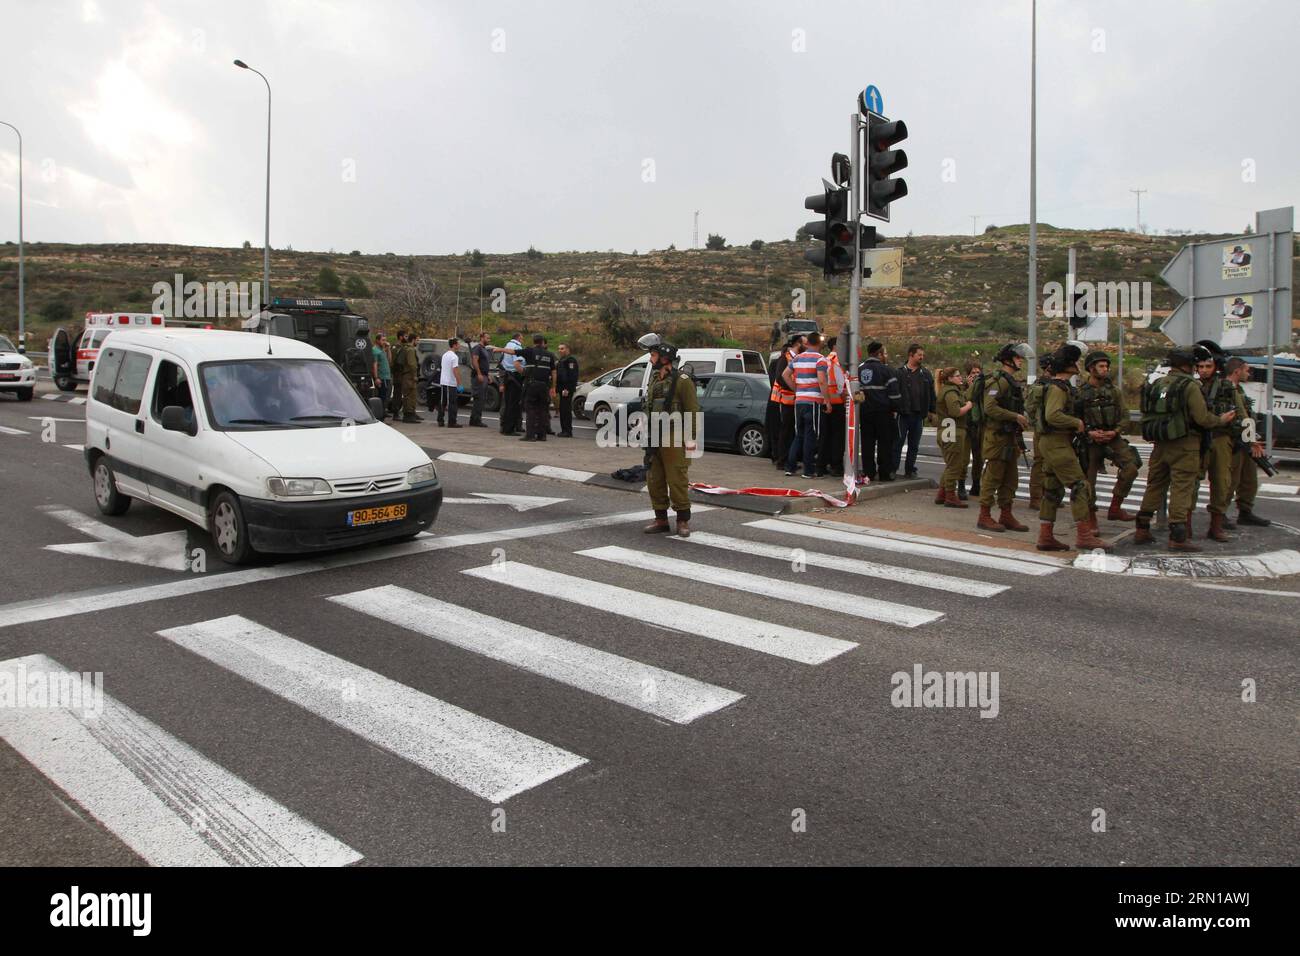 (141212) -- BETLEMME, 12 dicembre 2014 -- le forze di sicurezza israeliane ispezionano la scena di un attacco acido da parte di un palestinese vicino a un posto di blocco fuori dalla città di Betlemme in Cisgiordania, il 12 dicembre 2014. Un uomo palestinese descritto come mentalmente instabile lanciò acido contro una famiglia di israeliani che gli diede un passaggio in Cisgiordania prima di essere colpito e ferito, i residenti e l'esercito israeliano hanno detto). MIDEAST-BETHLEHEM-ATTACK LuayxSababa PUBLICATIONxNOTxINxCHN Bethlehem DEC 12 2014 le forze di sicurezza israeliane ispezionano la scena dell'attacco da parte di un PALESTINESE vicino a un Checkpoint fuori dalla città di BETLEMME in CISGIORDANIA Foto Stock